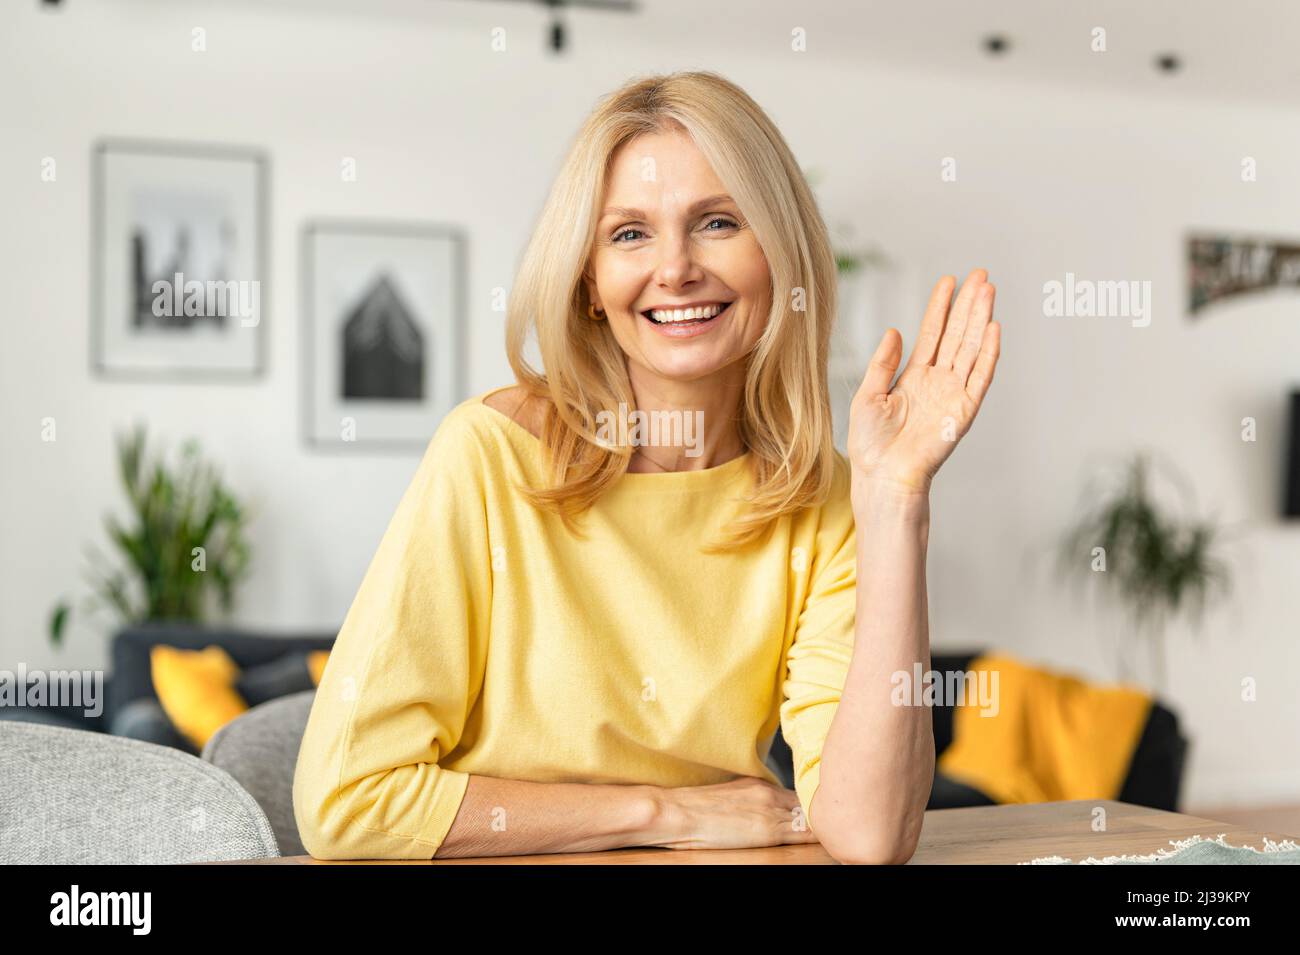 Une femme caucasienne, âgée et énergique, est prête pour un entretien en ligne lors d'un appel vidéo, assise à la réception et regardant et agitant la caméra, dit Bonjour. Concept de recherche d'emploi Banque D'Images